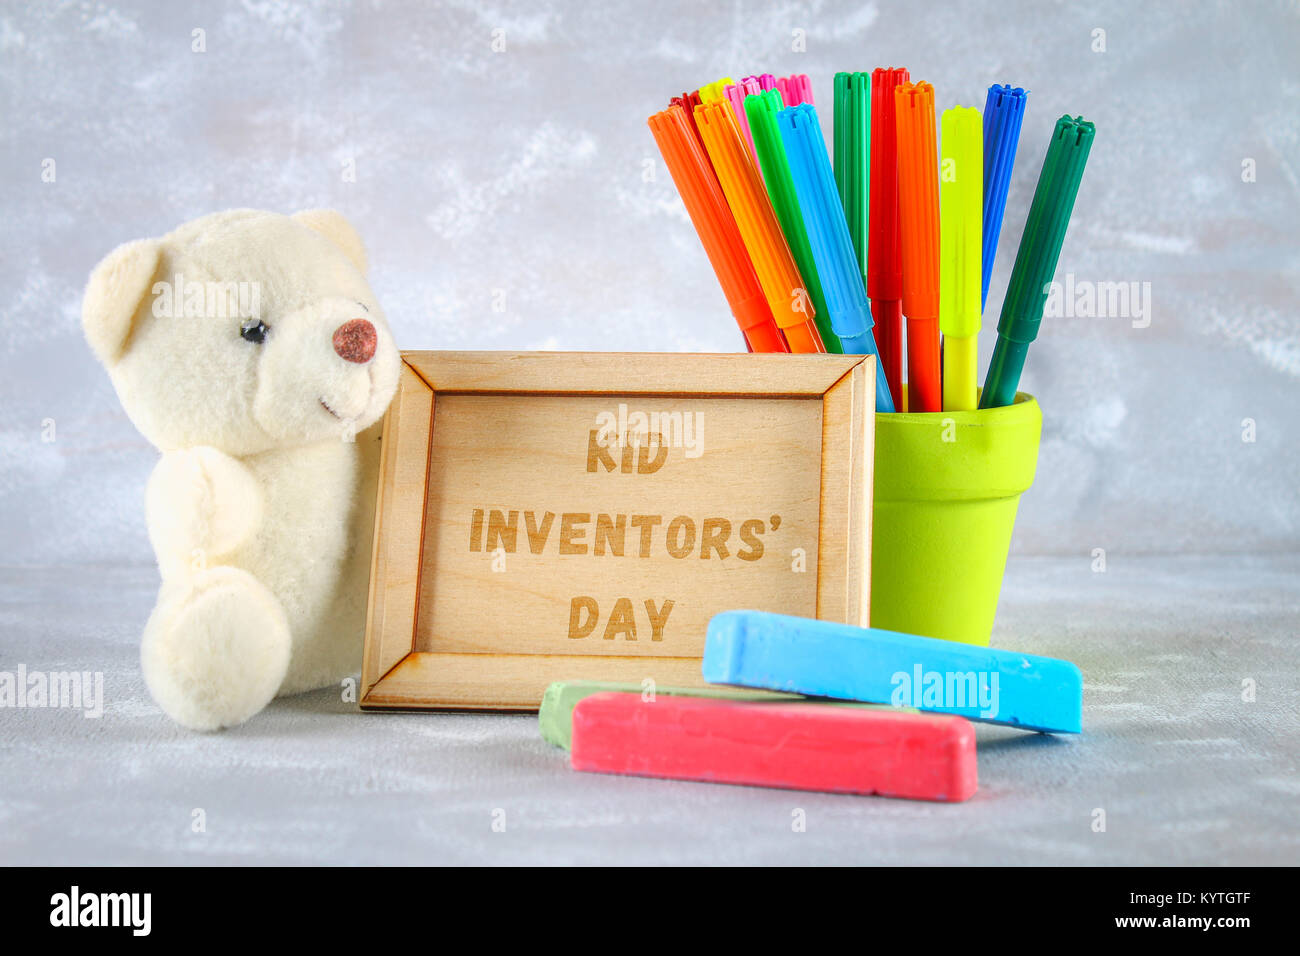 Teddybär, Marker, Plakette und Zeichnungen von Erfindungen für Kinder - Eis  am Stiel, Ohrenschützer, Rechner auf einem grauen Hintergrund. Text-Kid  Erfinder' Tag Stockfotografie - Alamy